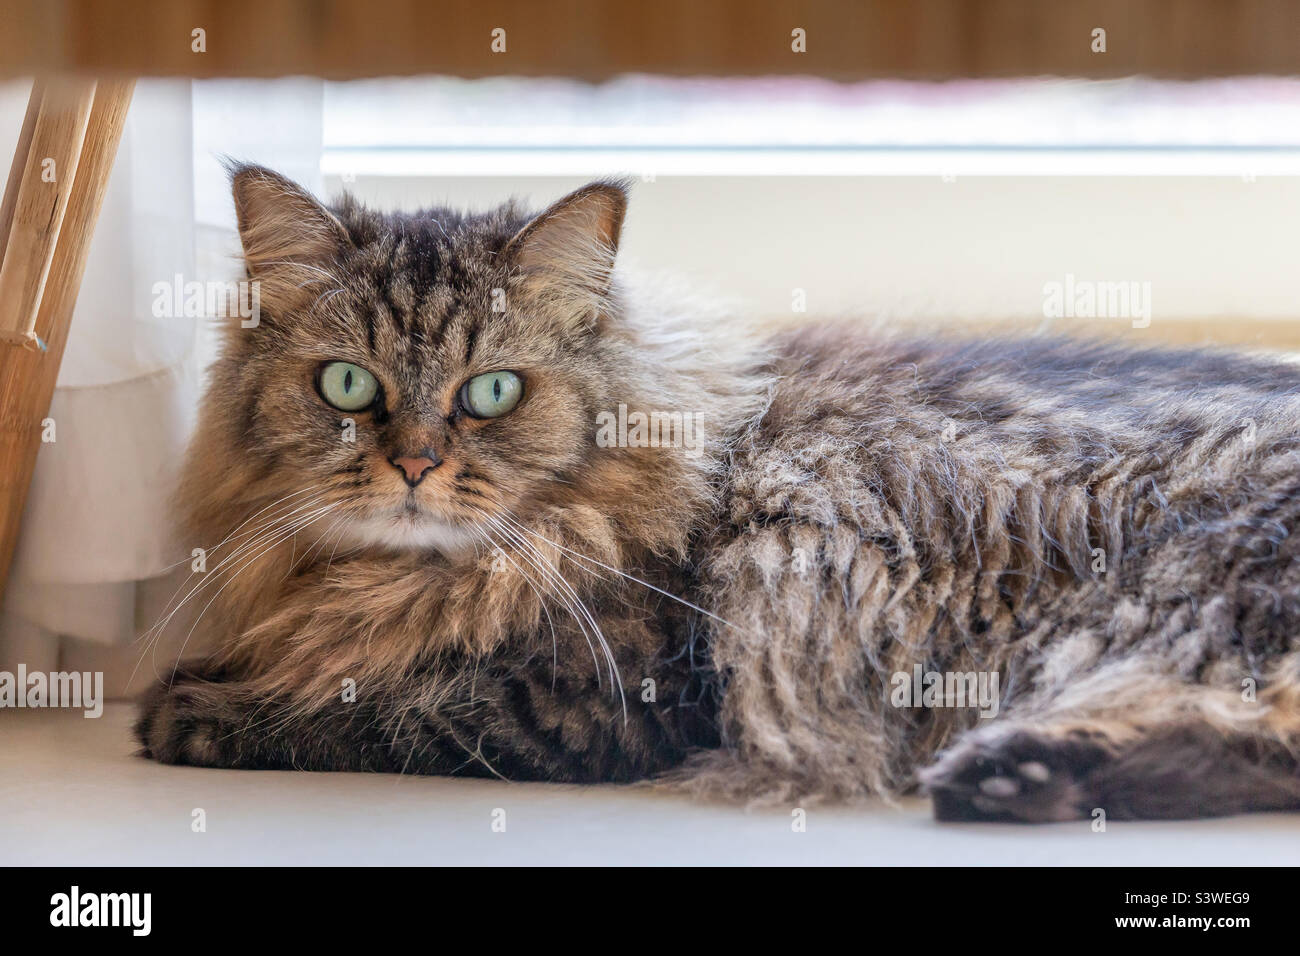 Cute fluffy domestic cat portrait Stock Photo